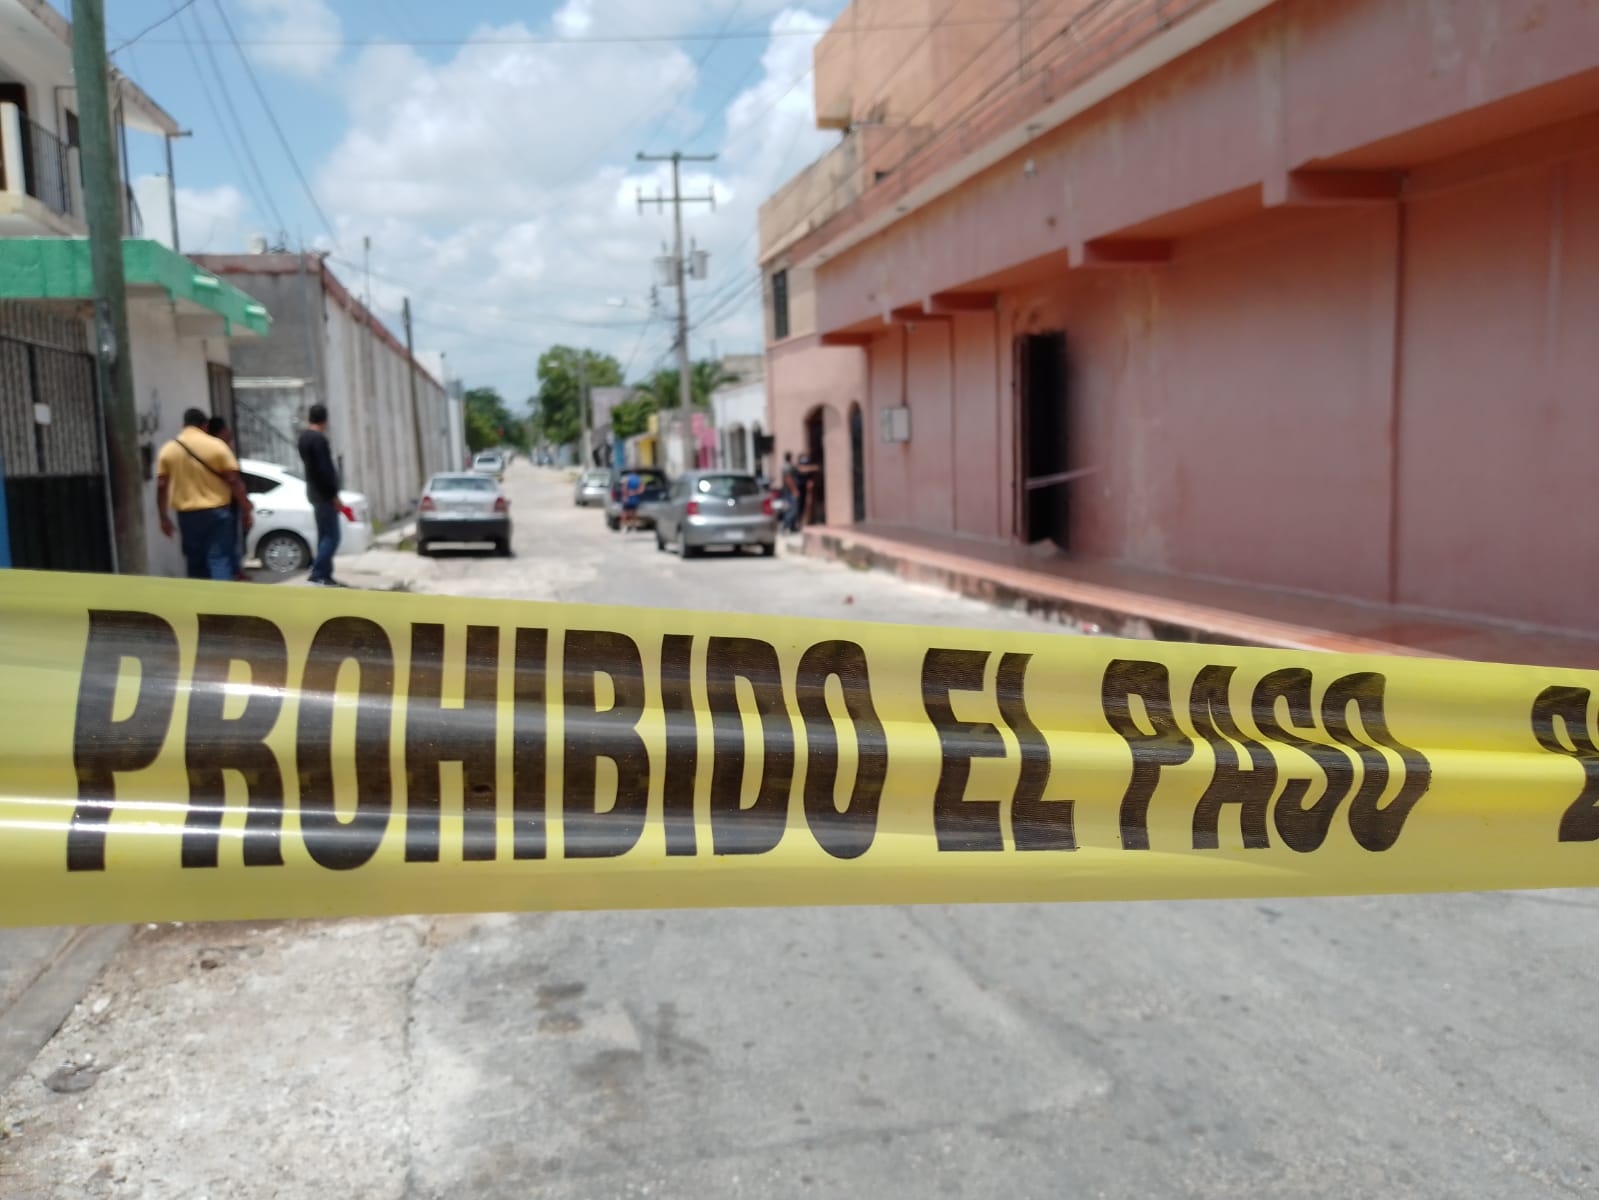 Violencia en Cancún: Estos son los negocios cerrados por la inseguridad